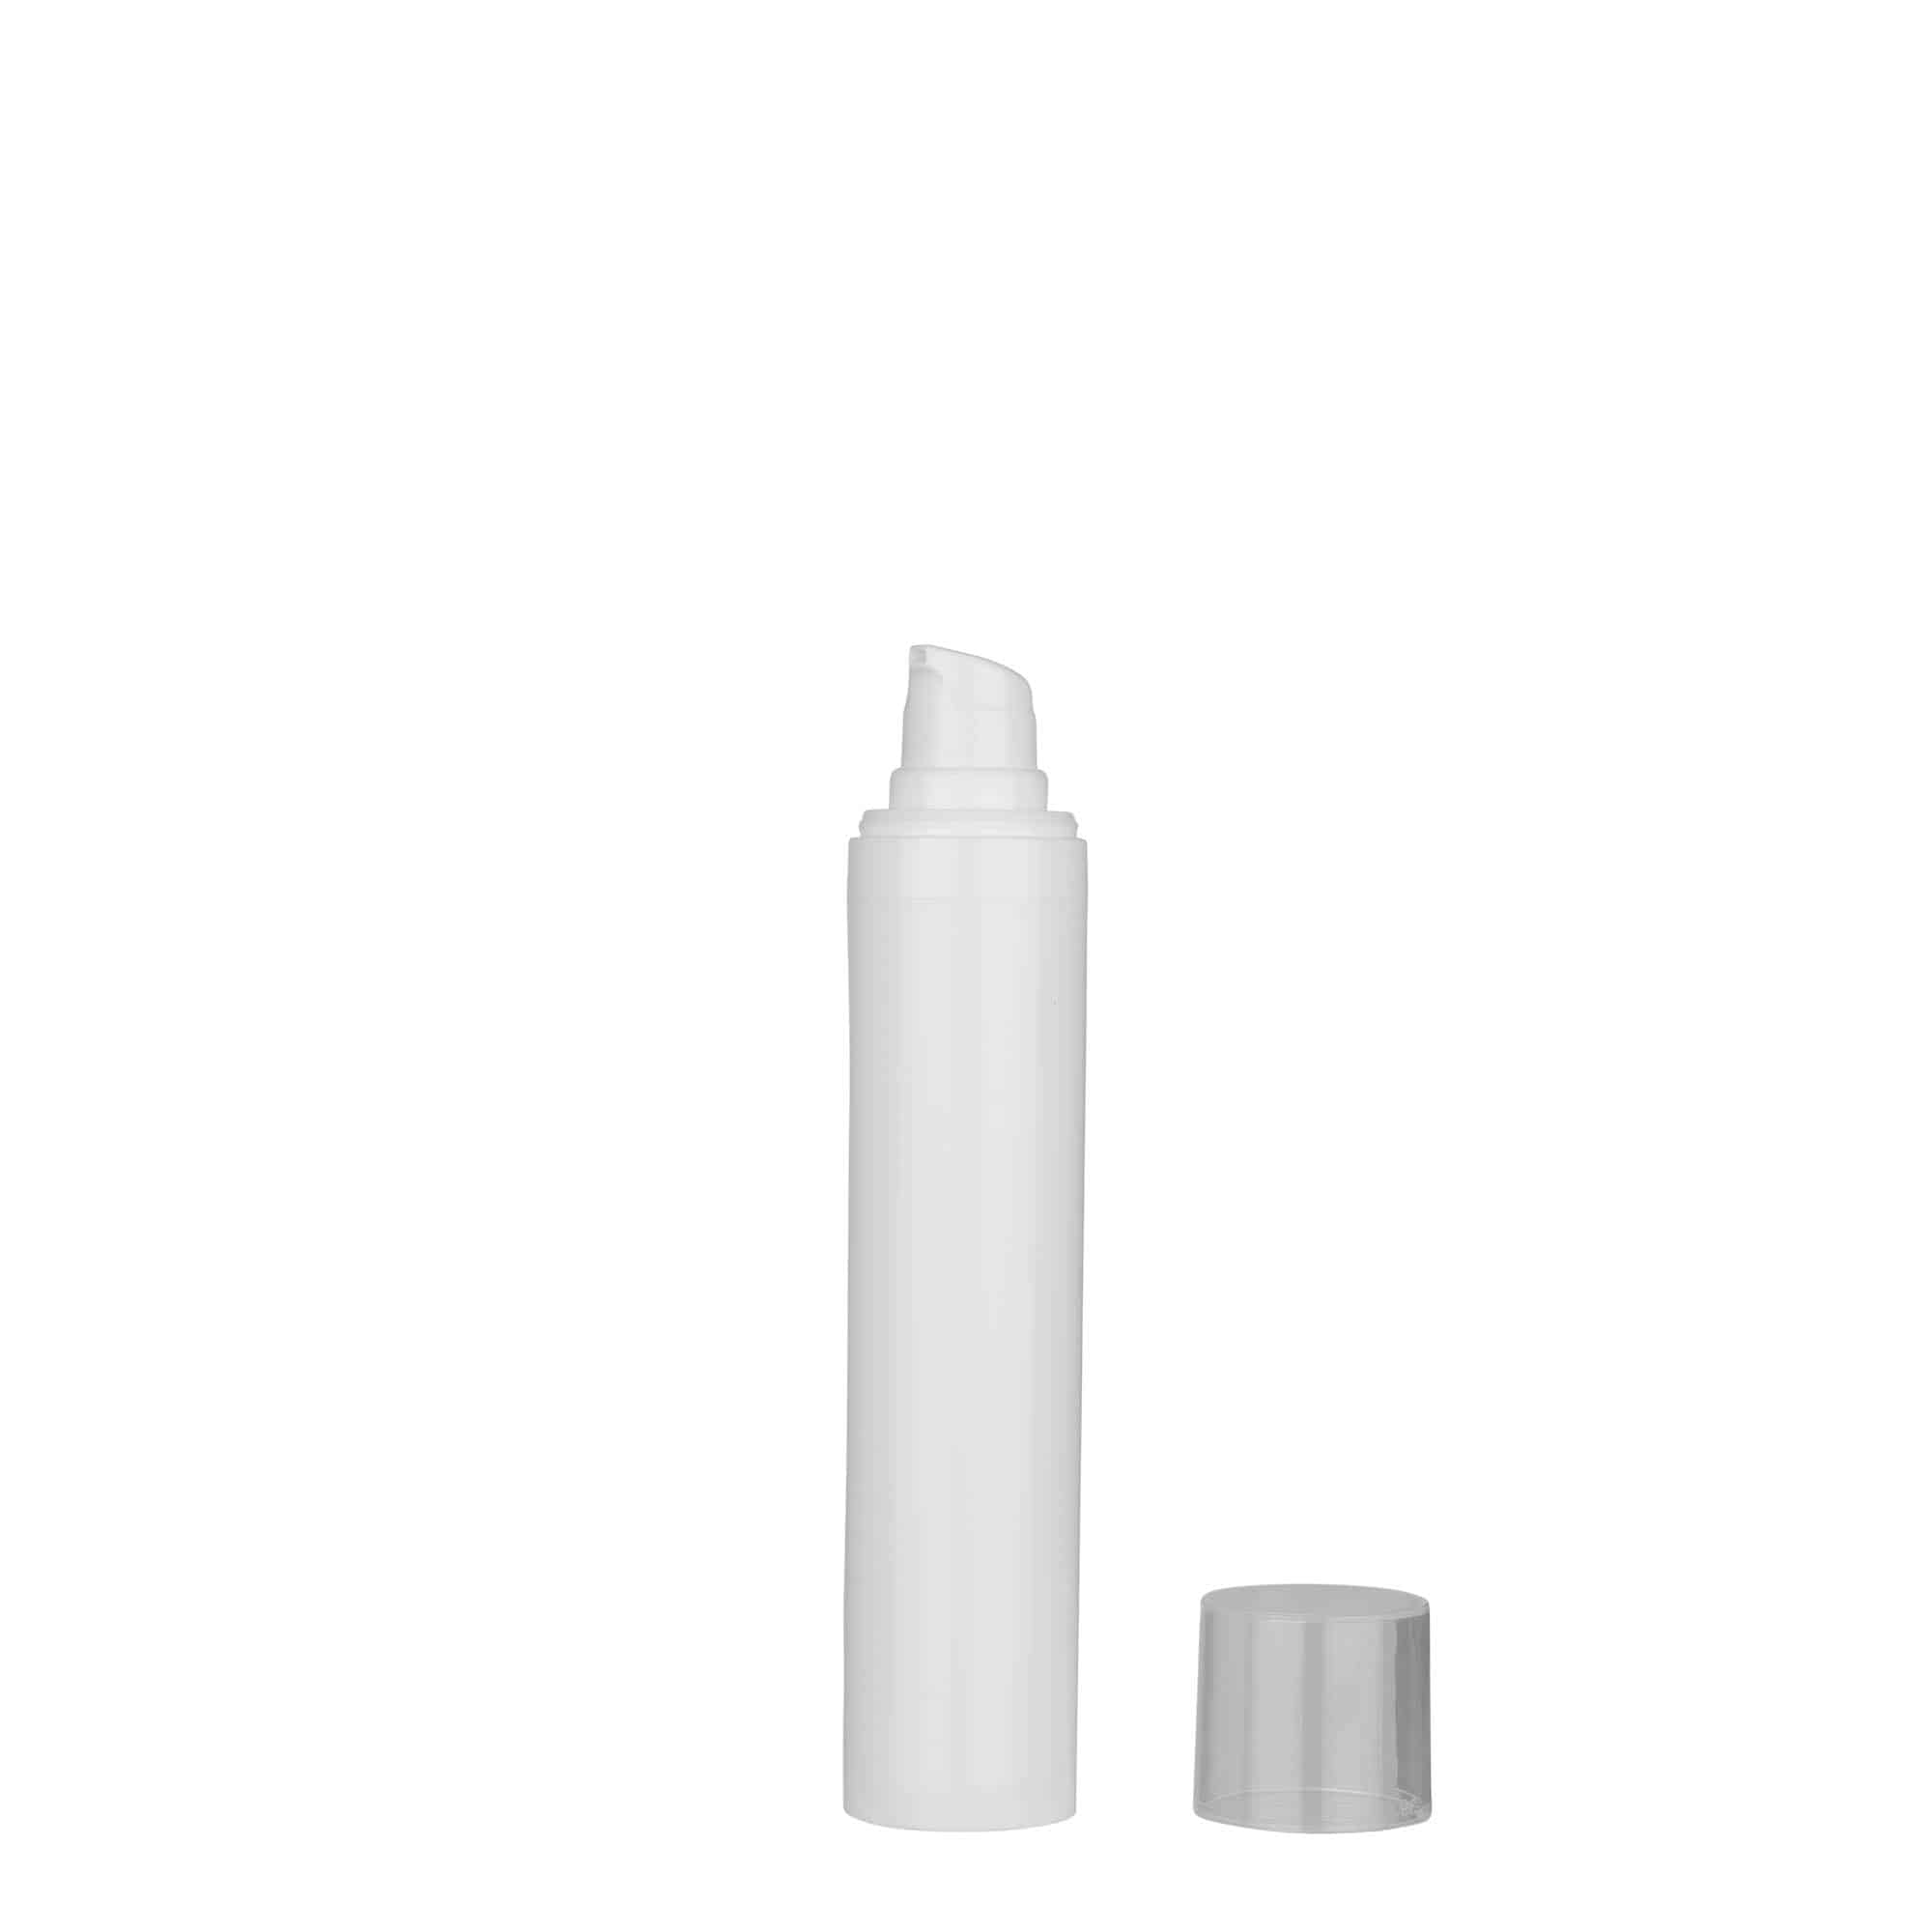 50 ml dozownik airless 'Micro', tworzywo sztuczne PP, kolor biały